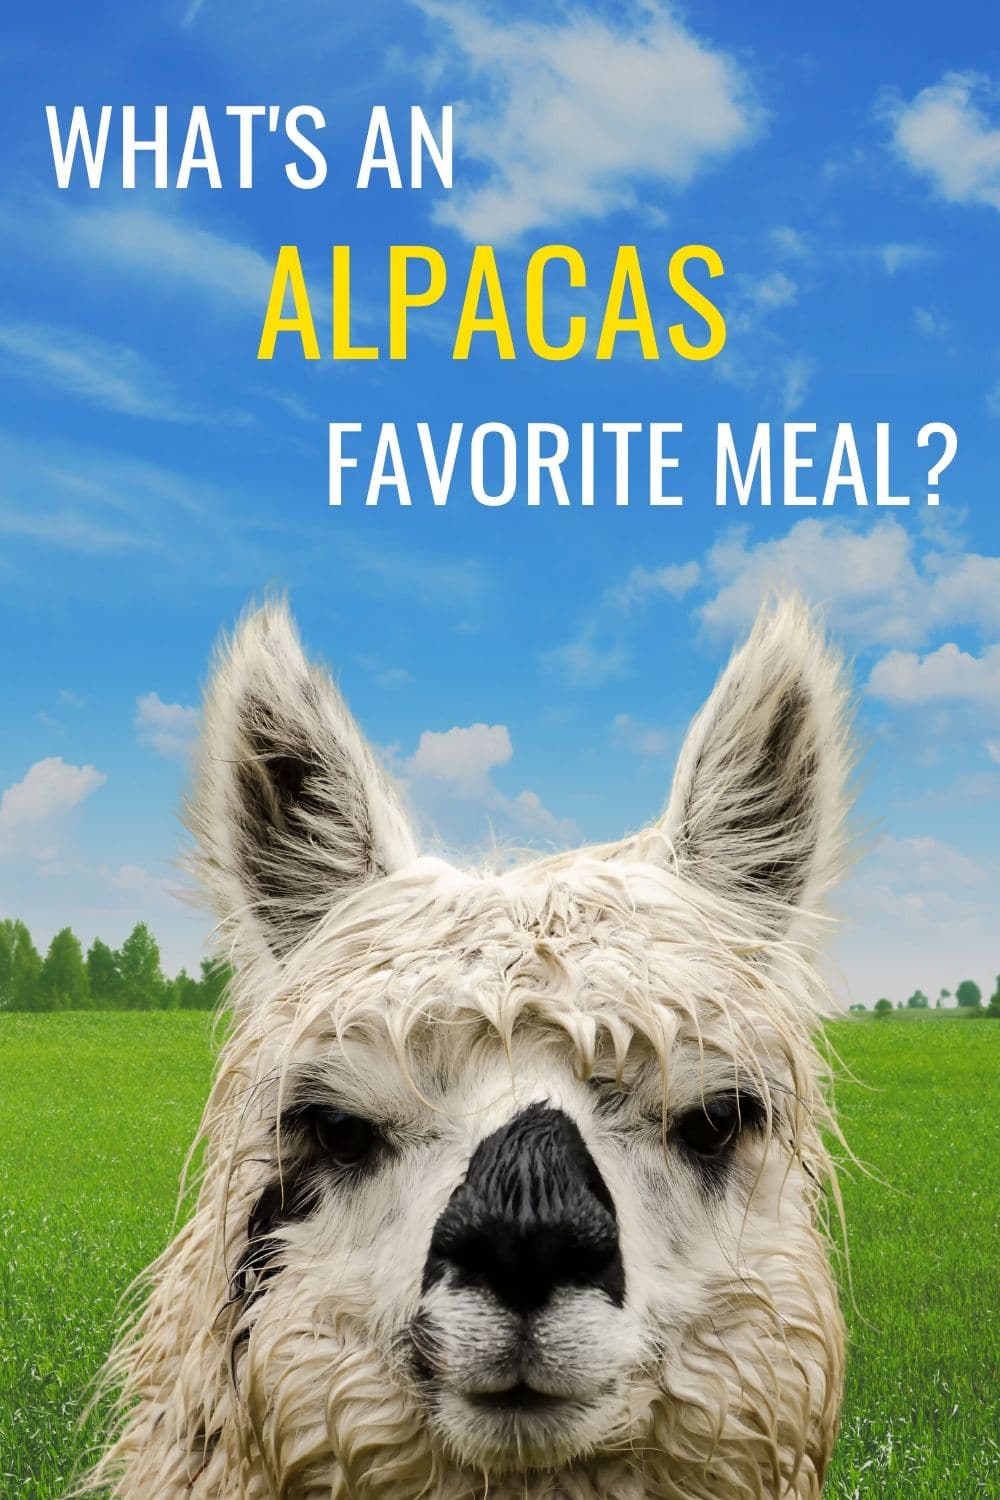 What Do Alpacas Eat?